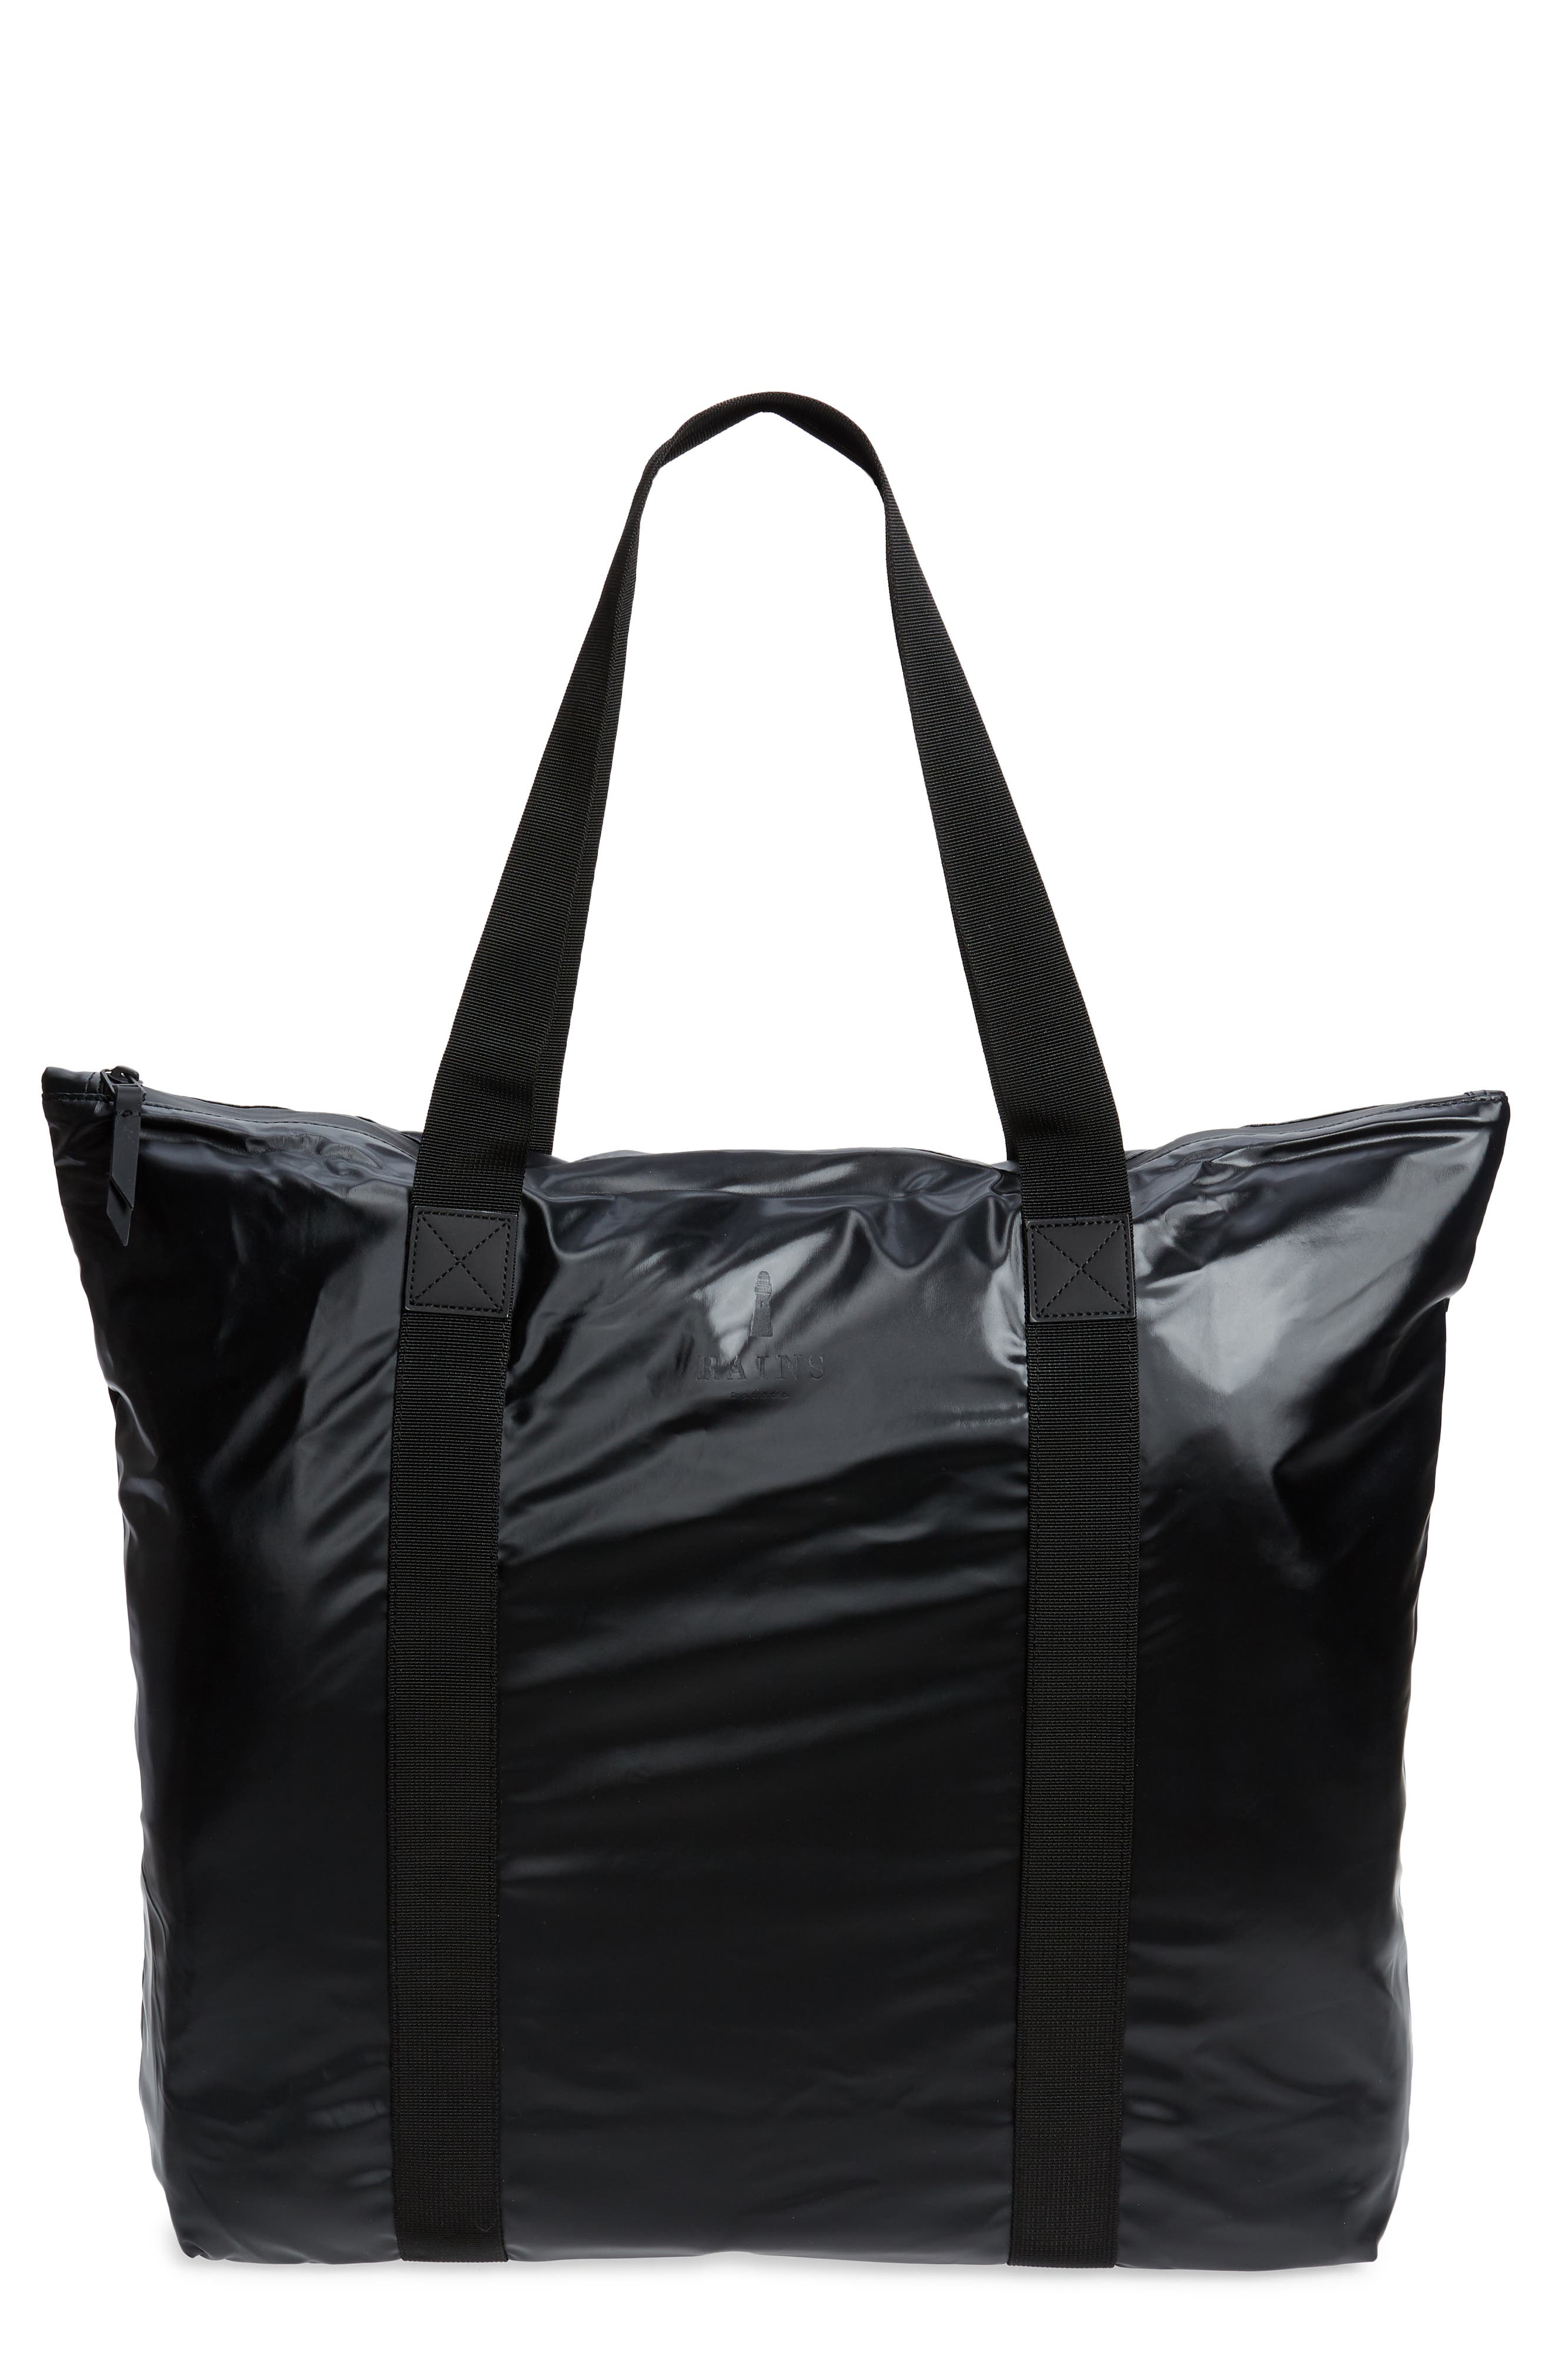 Rains Waterproof Tote Bag In Shiny Black